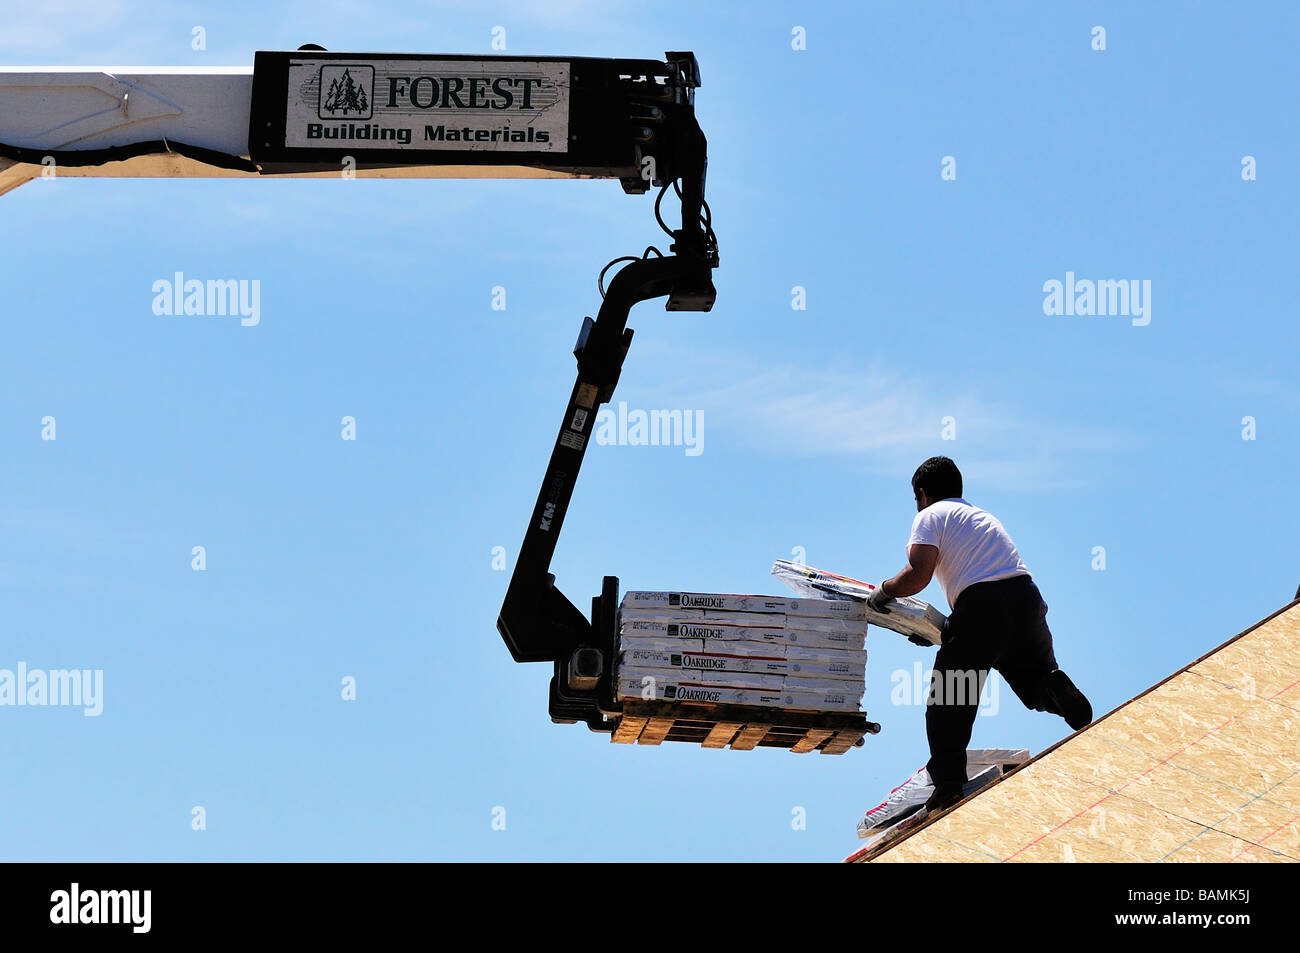 Un travailleur de la construction supprime les matériaux de couverture d'un grand chariot en haut d'une nouvelle maison en construction. Oklahoma City, Oklahoma, USA. Banque D'Images